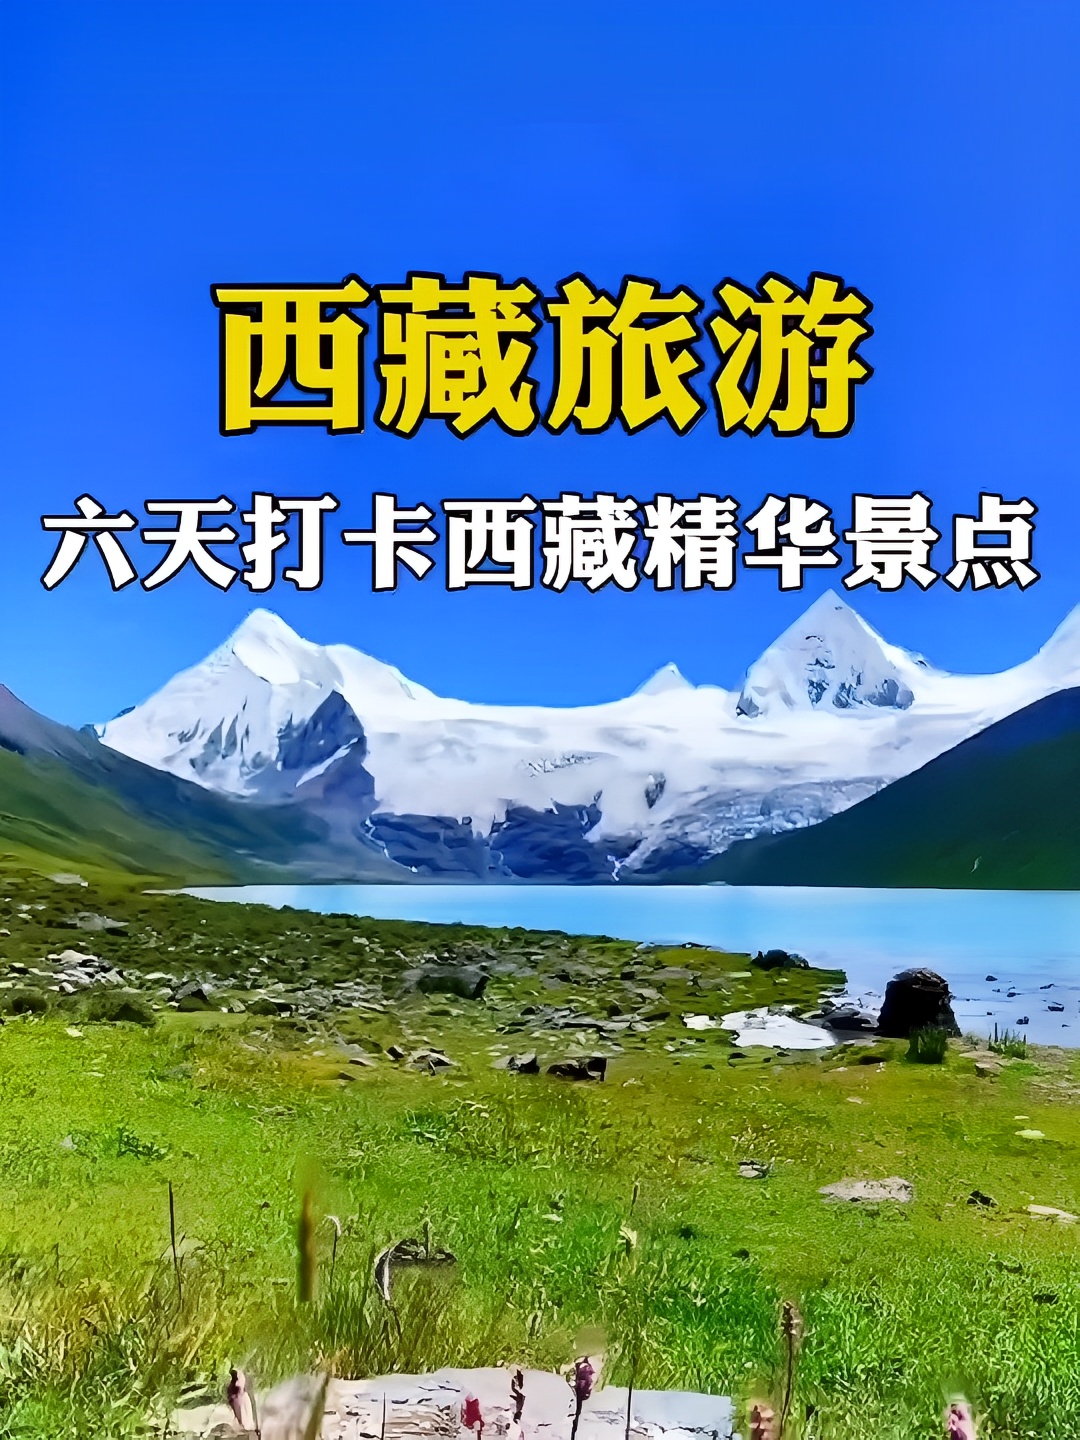 你以为这里是新疆是大西北？错，这里是西藏！ 快来看看吧！